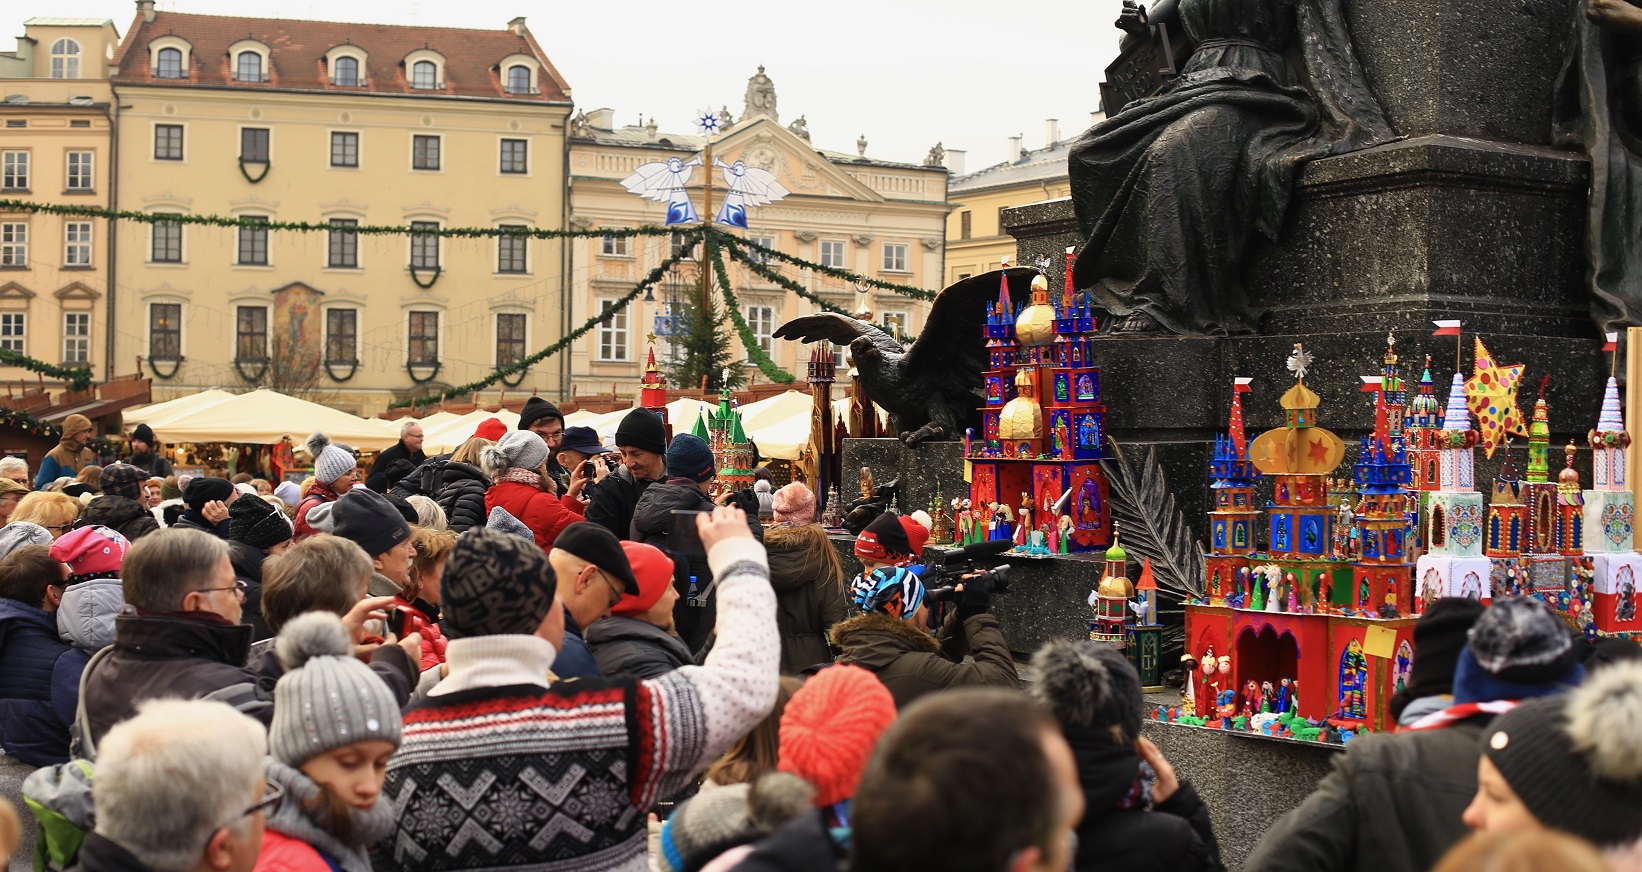 tłum ludzi przygląda się i fotografuje szopki ustawione pod pomnikiem Adama Mickiewicza w Krakowie